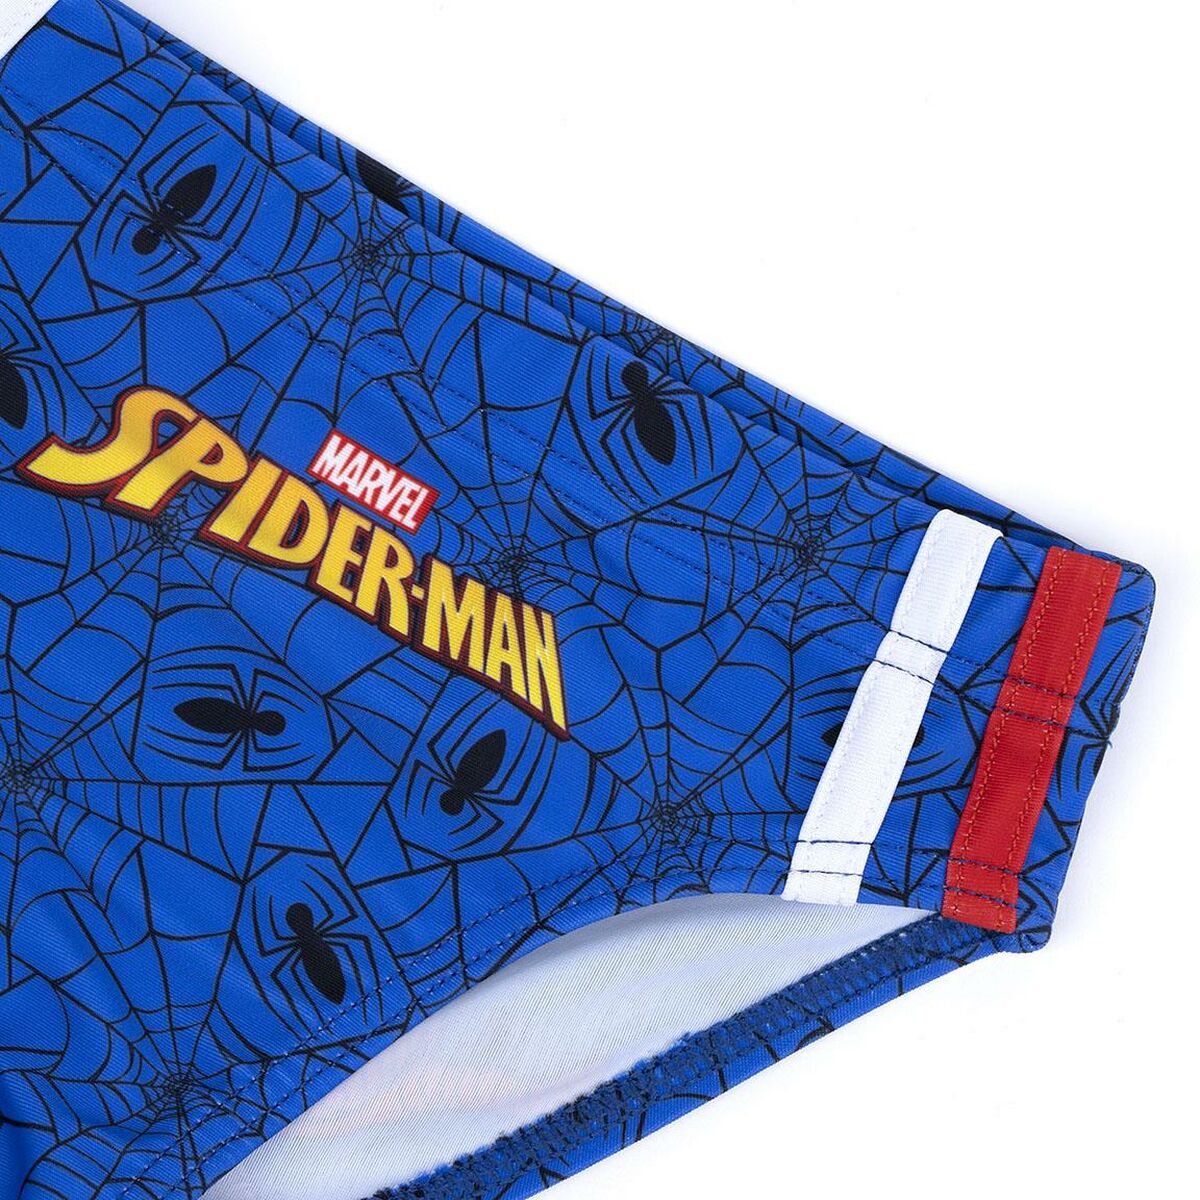 Children’s Bathing Costume Spiderman Dark blue